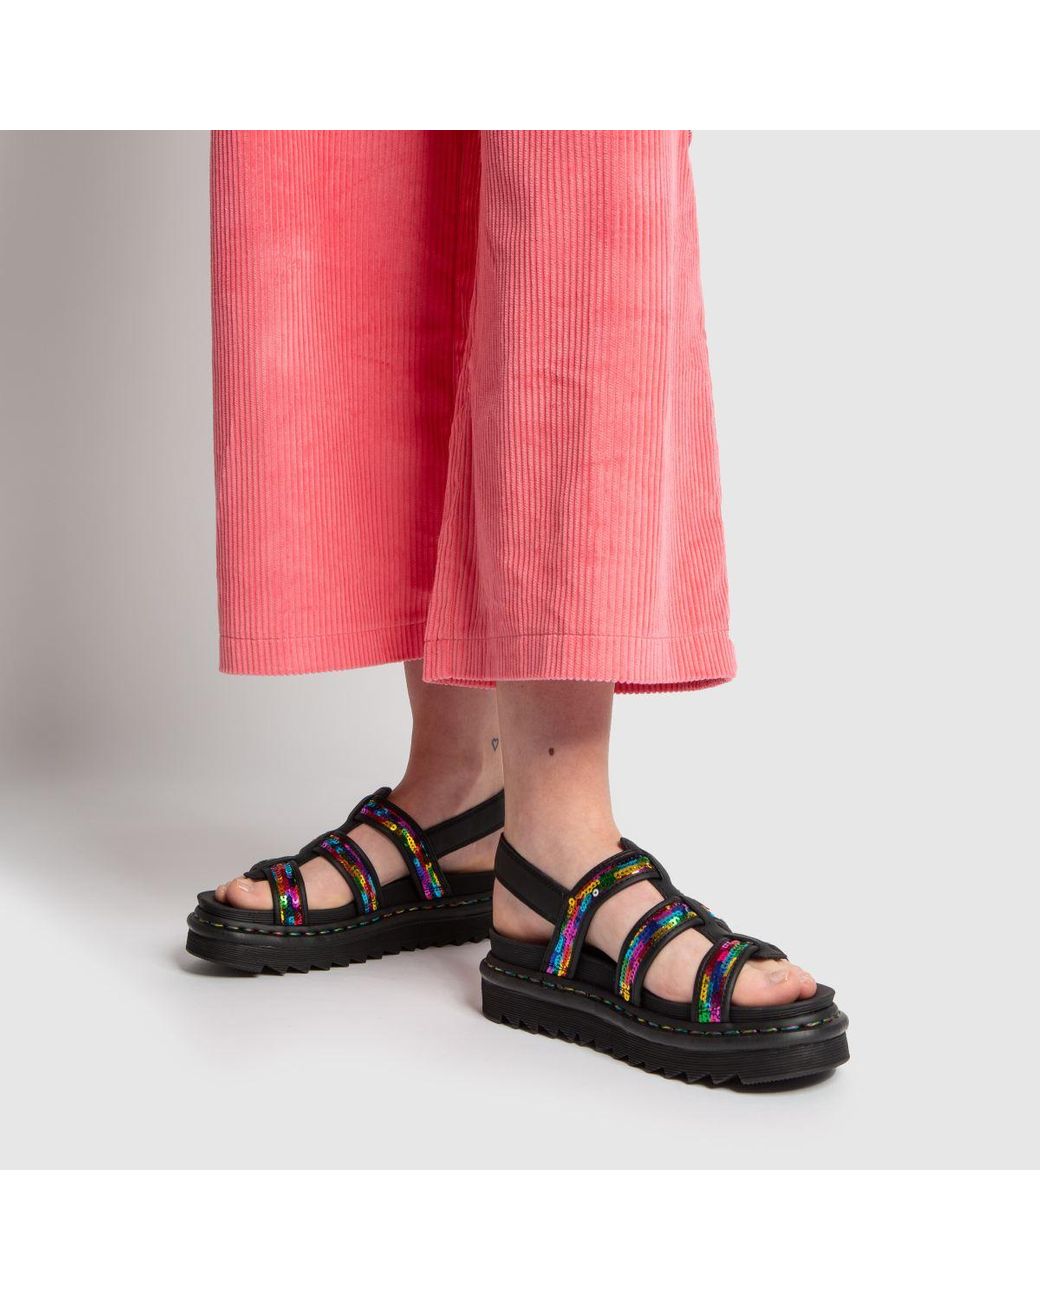 Dr. Martens Black & Pink Yelena Sequin Sandals | Lyst UK